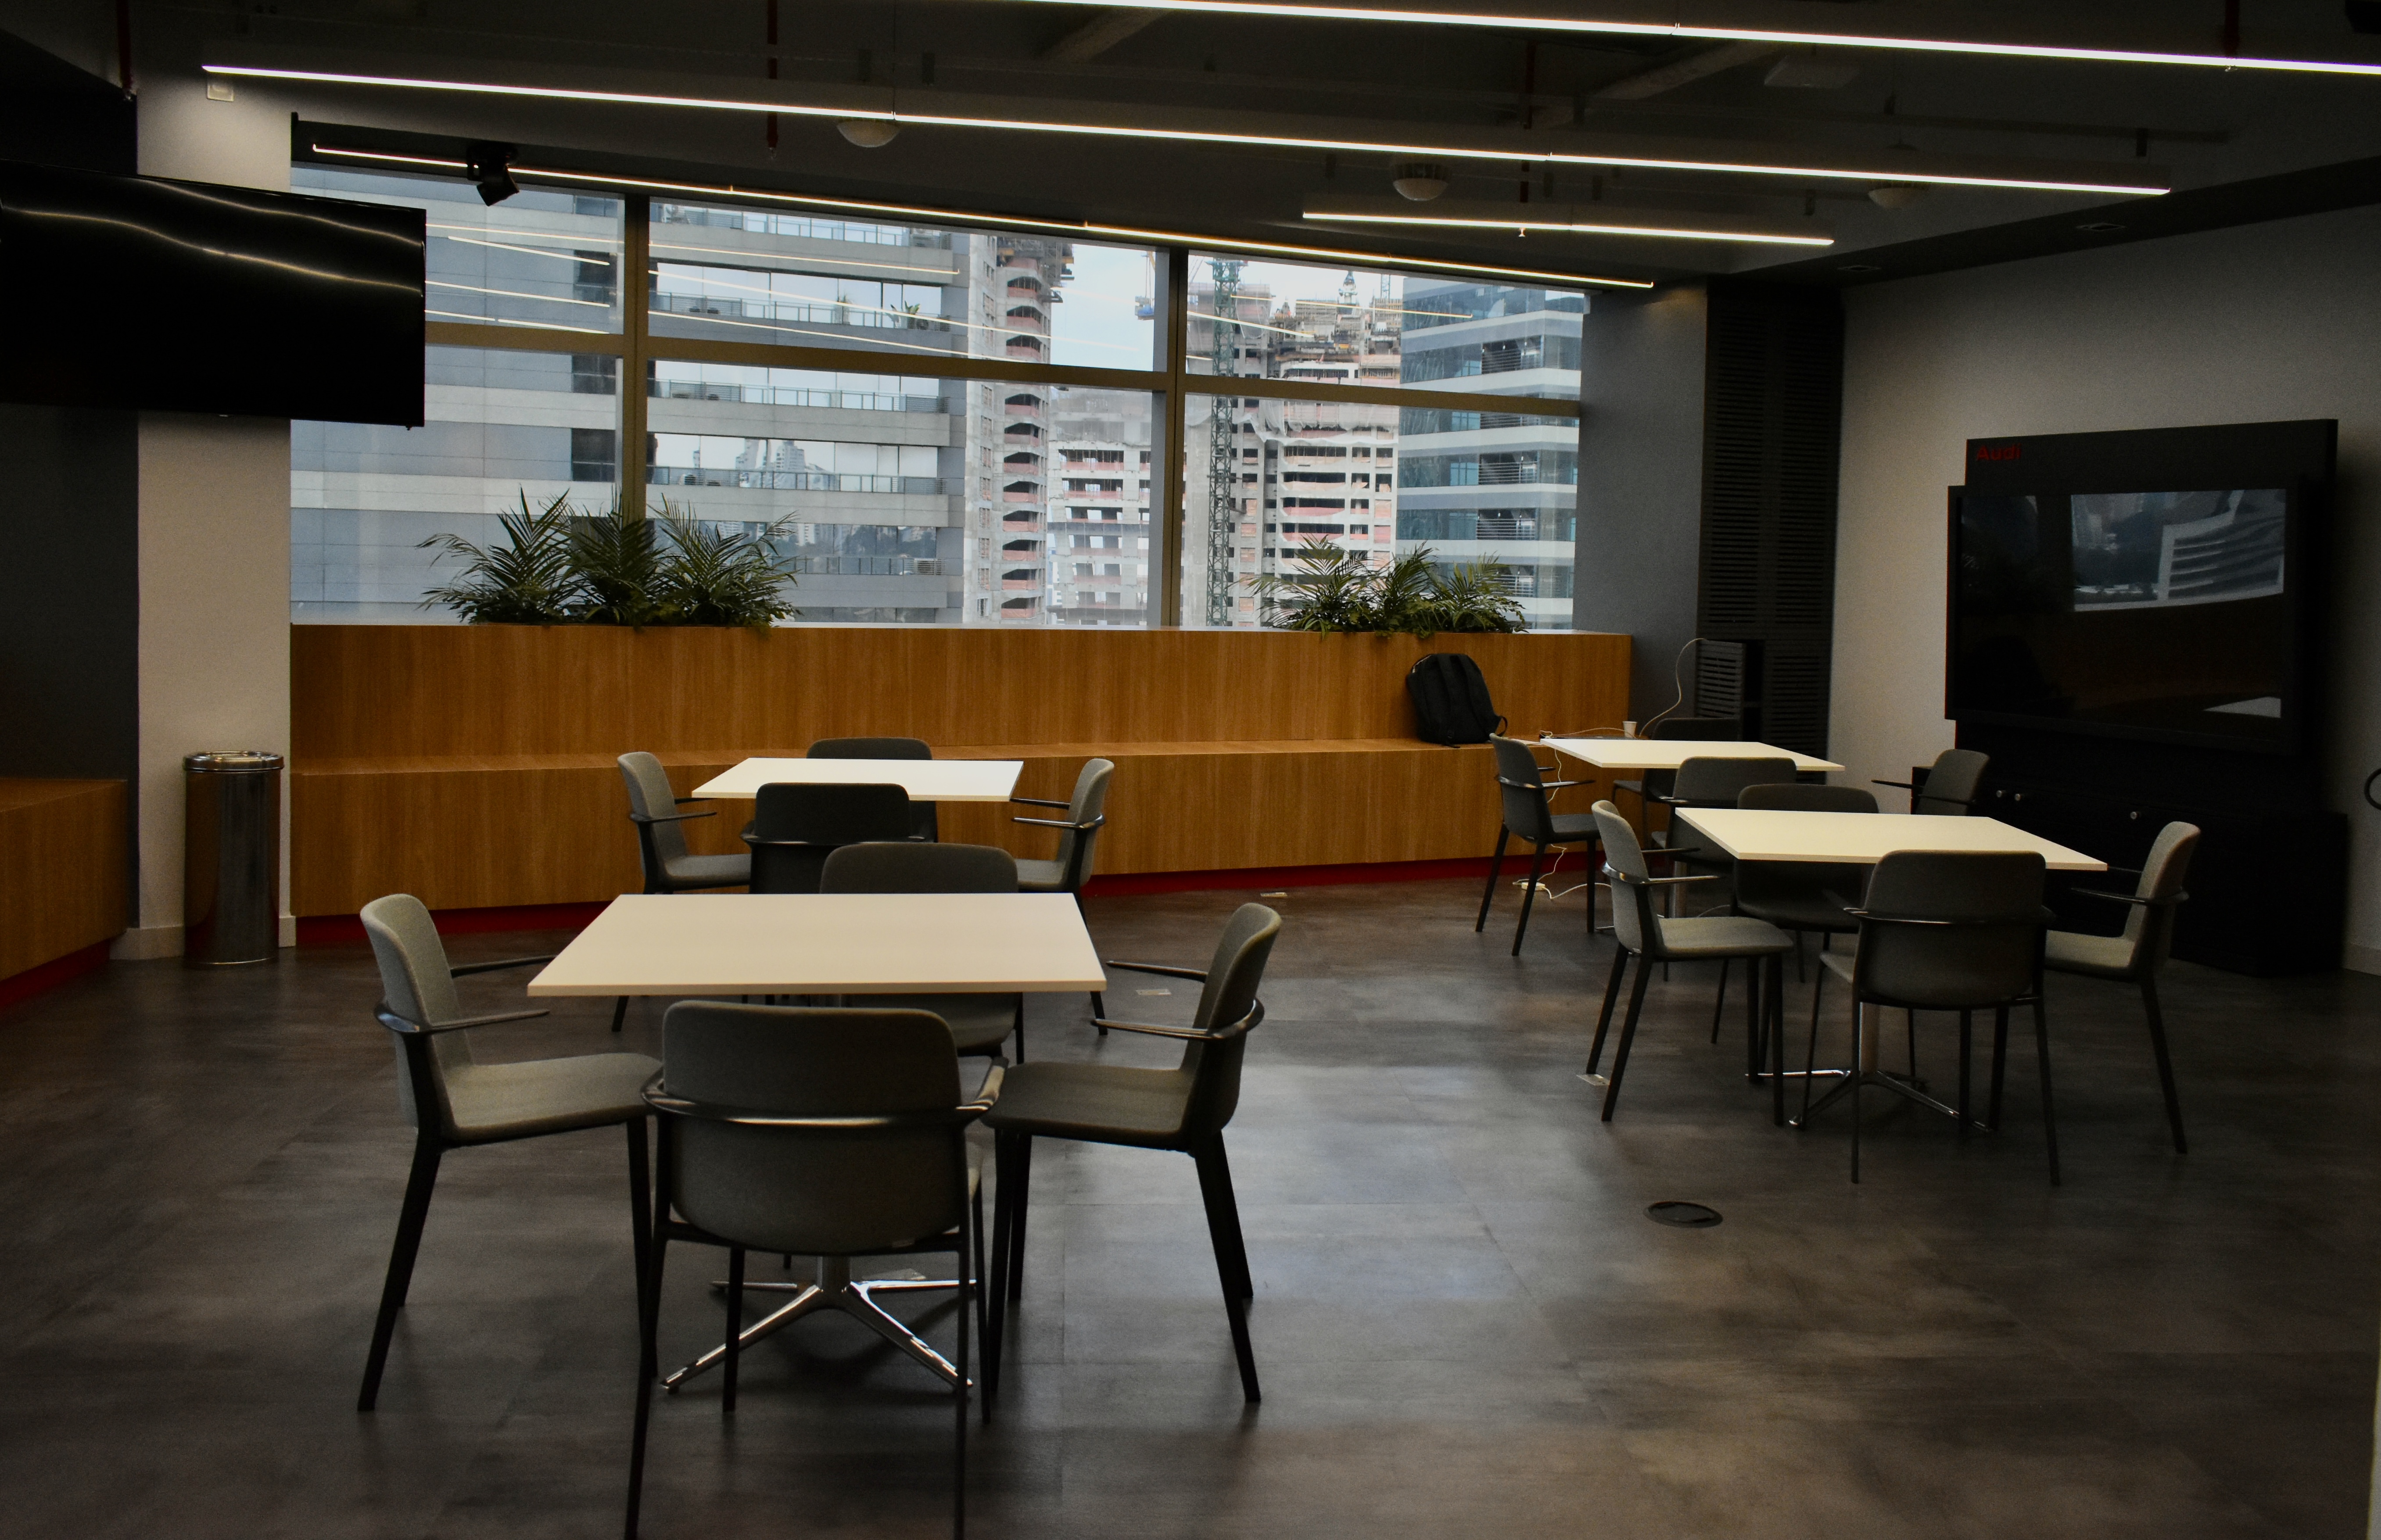 Imagem mostra a copa do novo escritório da Audi. O ambiente tem o piso de madeira, mesas de quatro lugares e, ao fundo, uma janela cuja vista são prédios de São Paulo